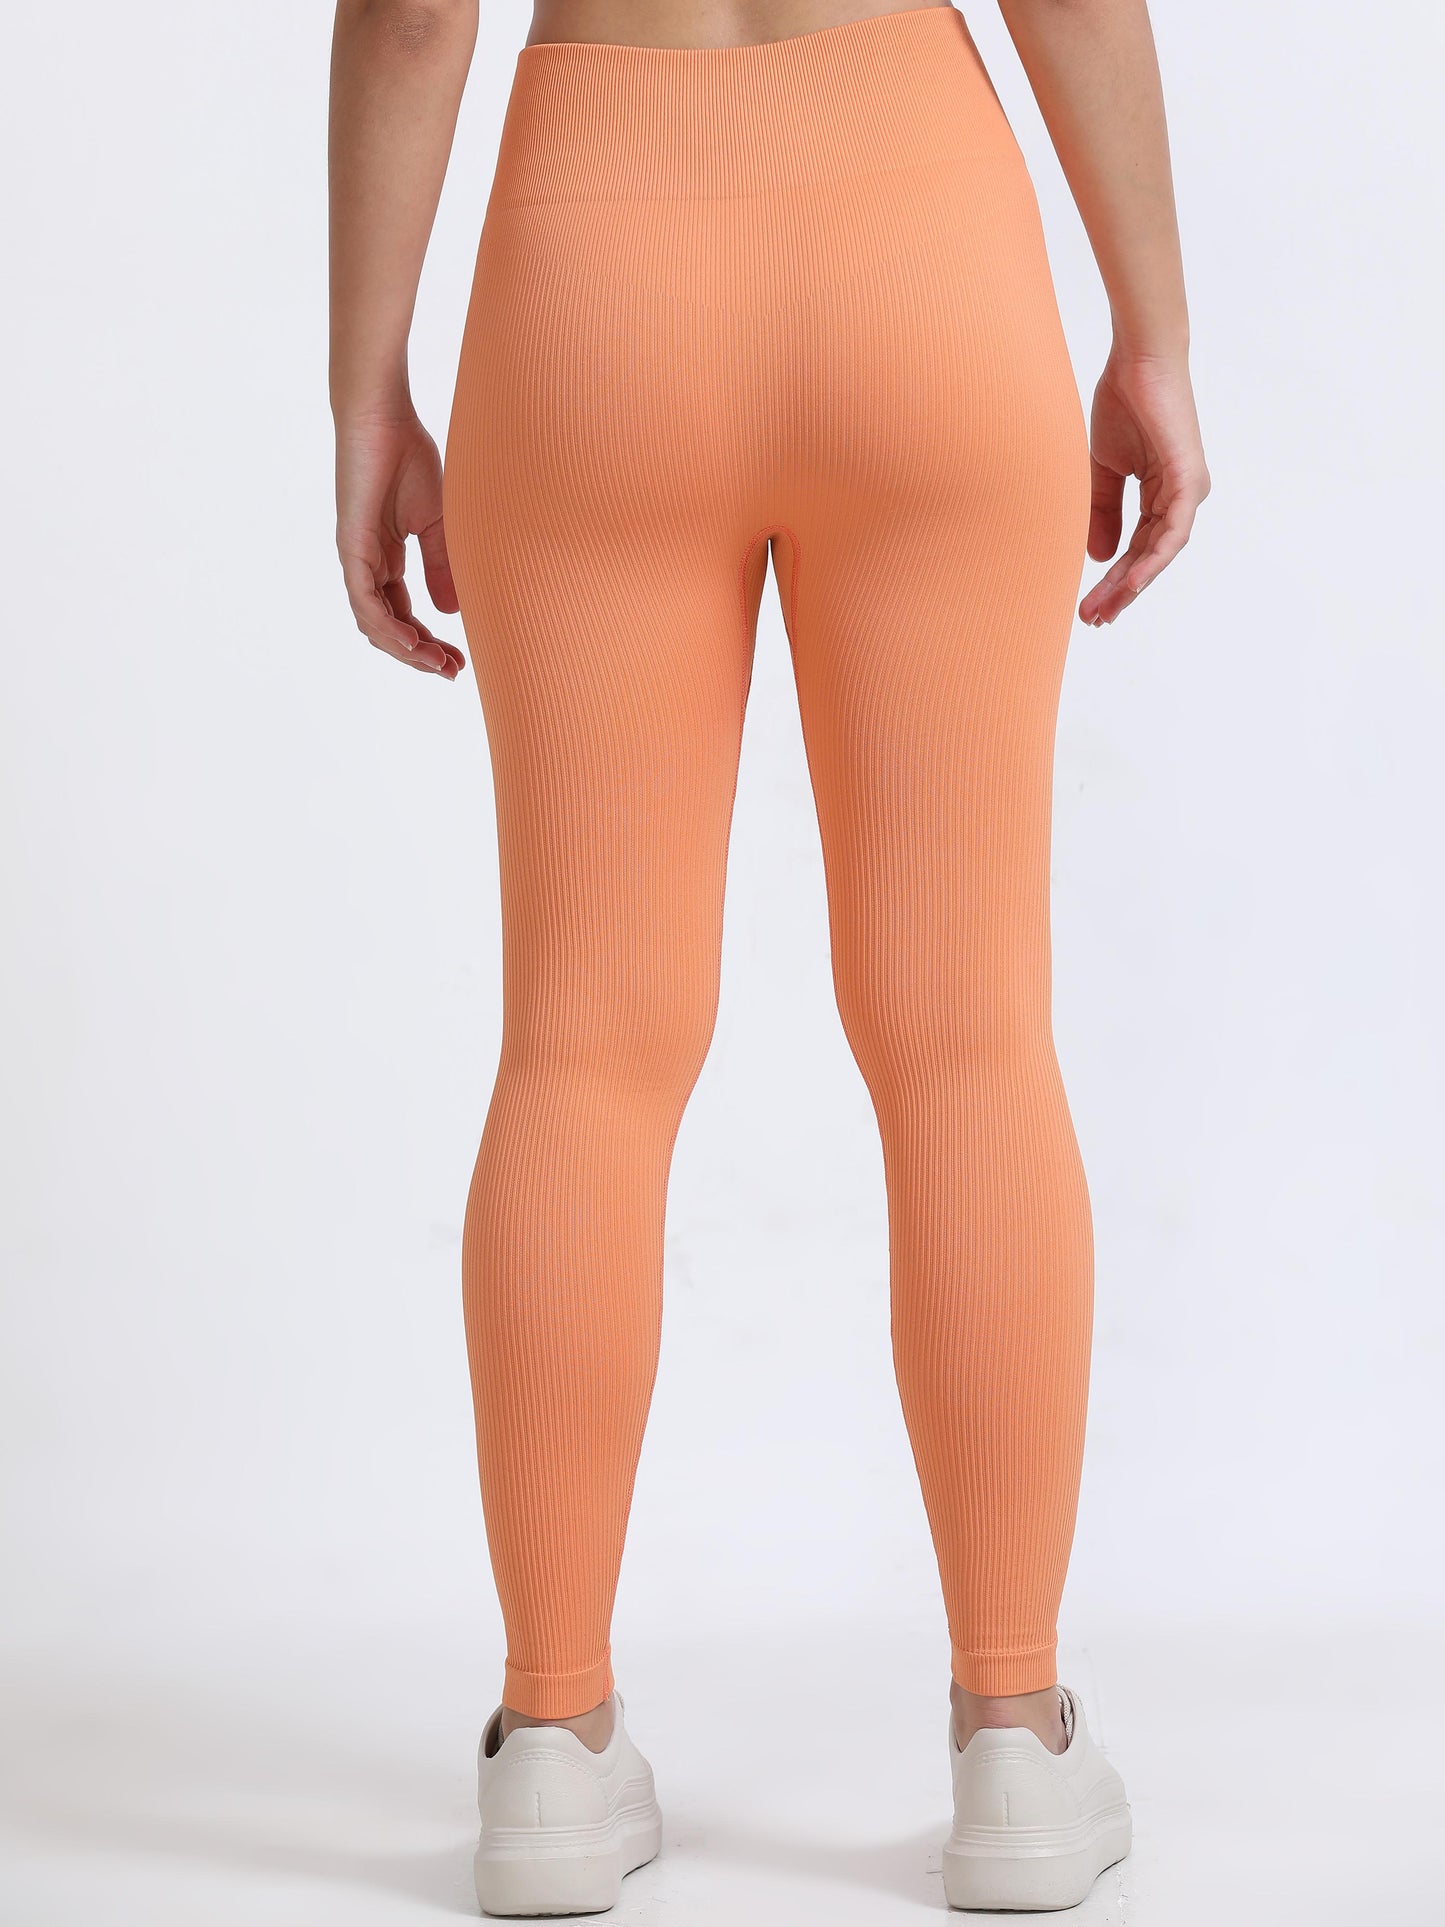 Orange Colour Leggings For Women